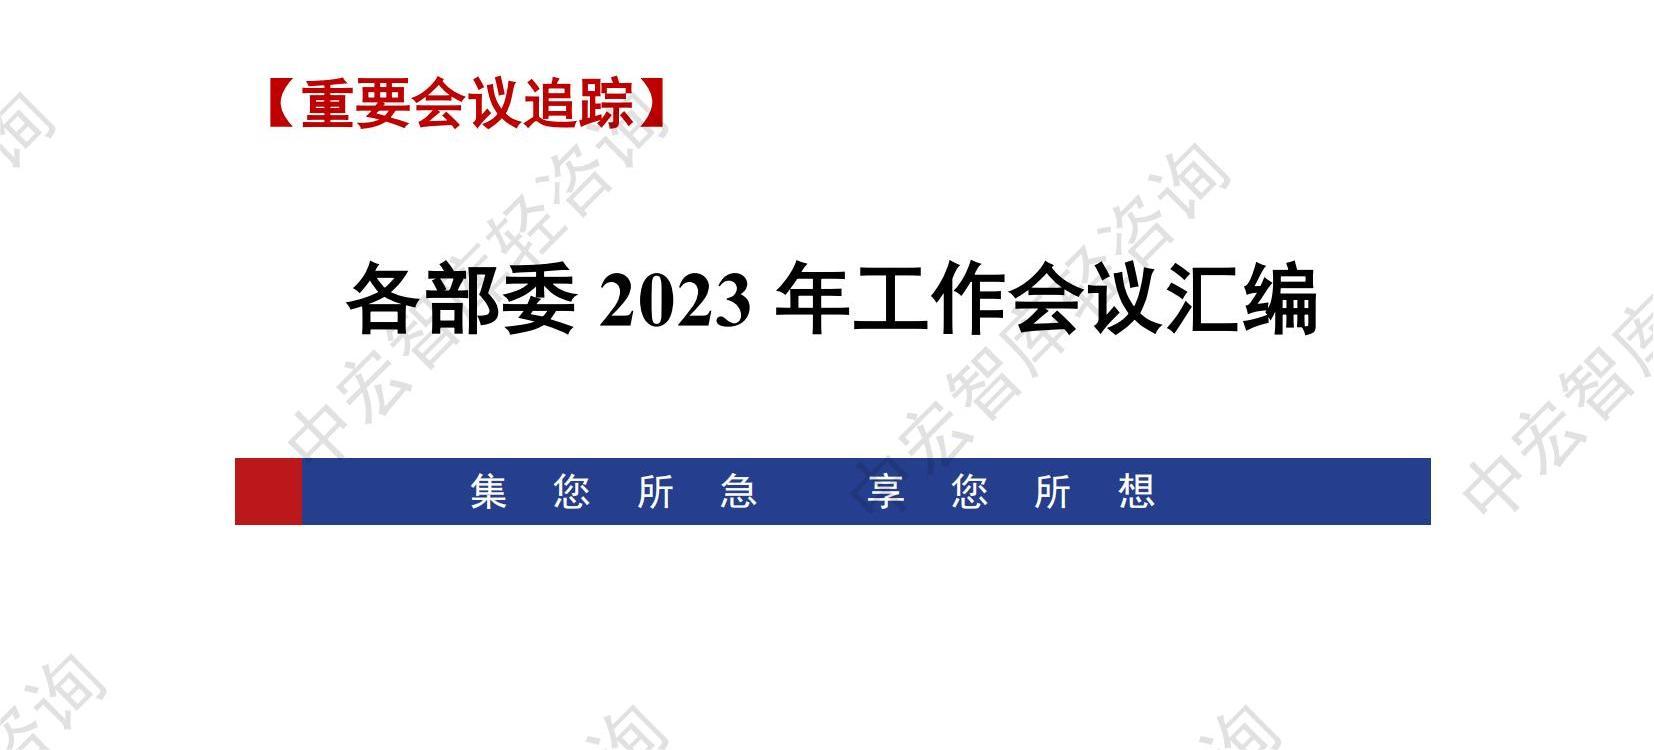 各部委2023年重点工作会议汇编_中宏轻咨询 20230113